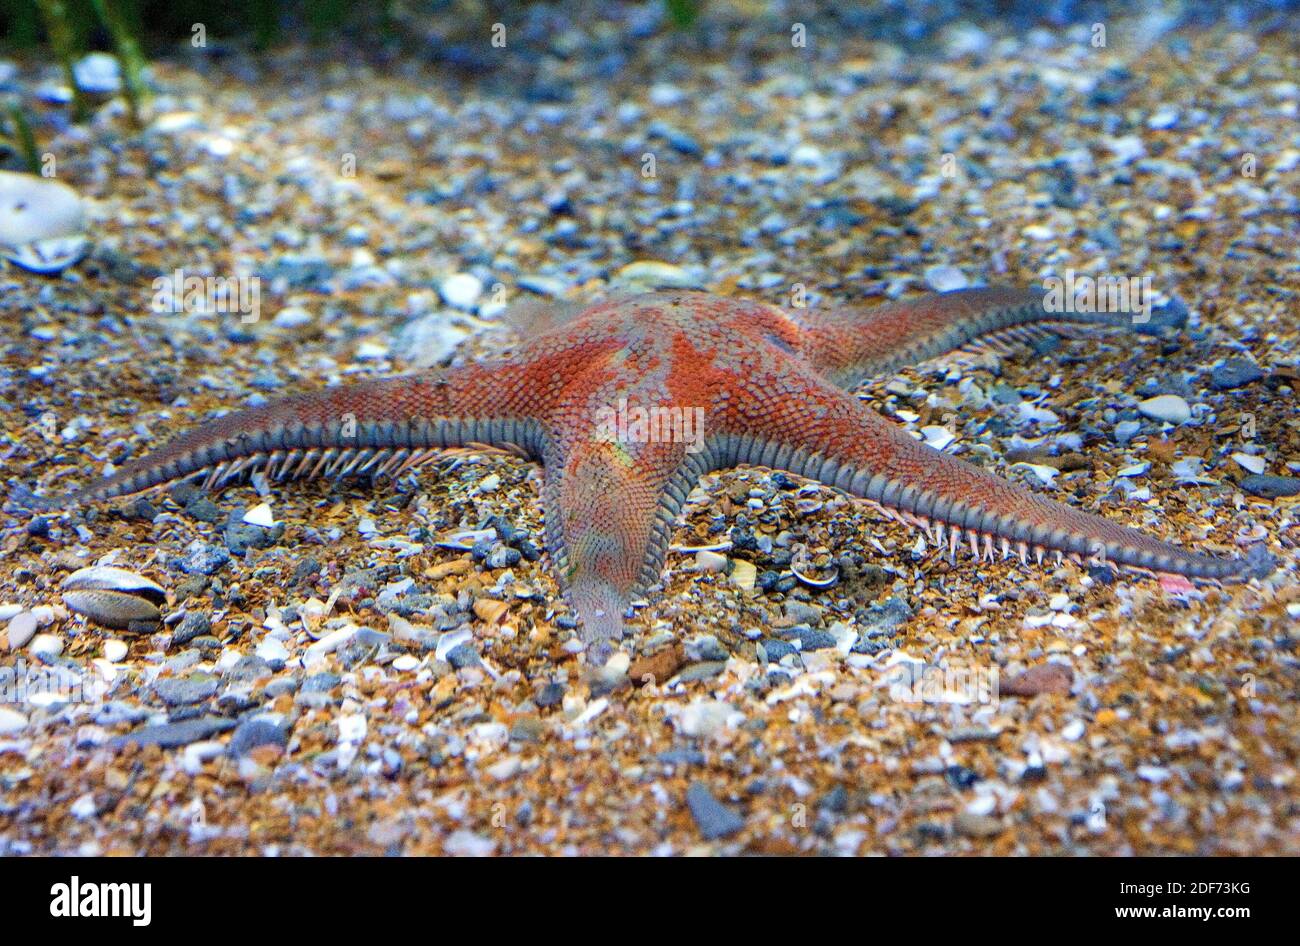 La estrella roja del peine (Astropecten aranciacus) es una estrella nativa del mar Mediterráneo y del Atlántico oriental. Foto de stock